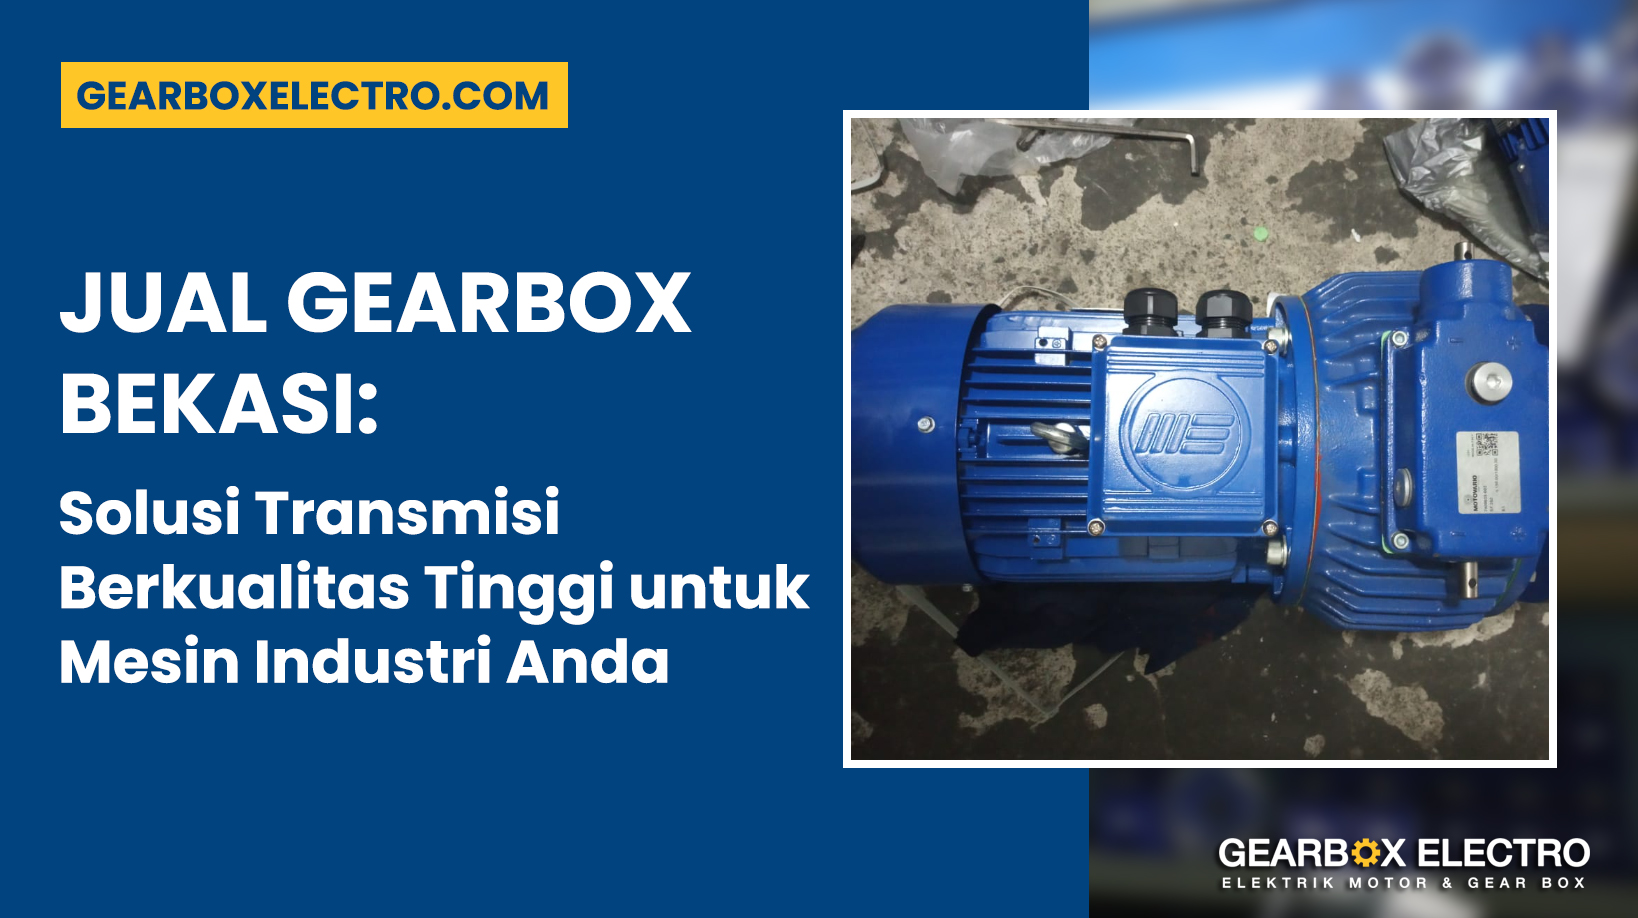 Jual Gearbox Bekasi: Solusi Transmisi Berkualitas Tinggi untuk Mesin Industri Anda